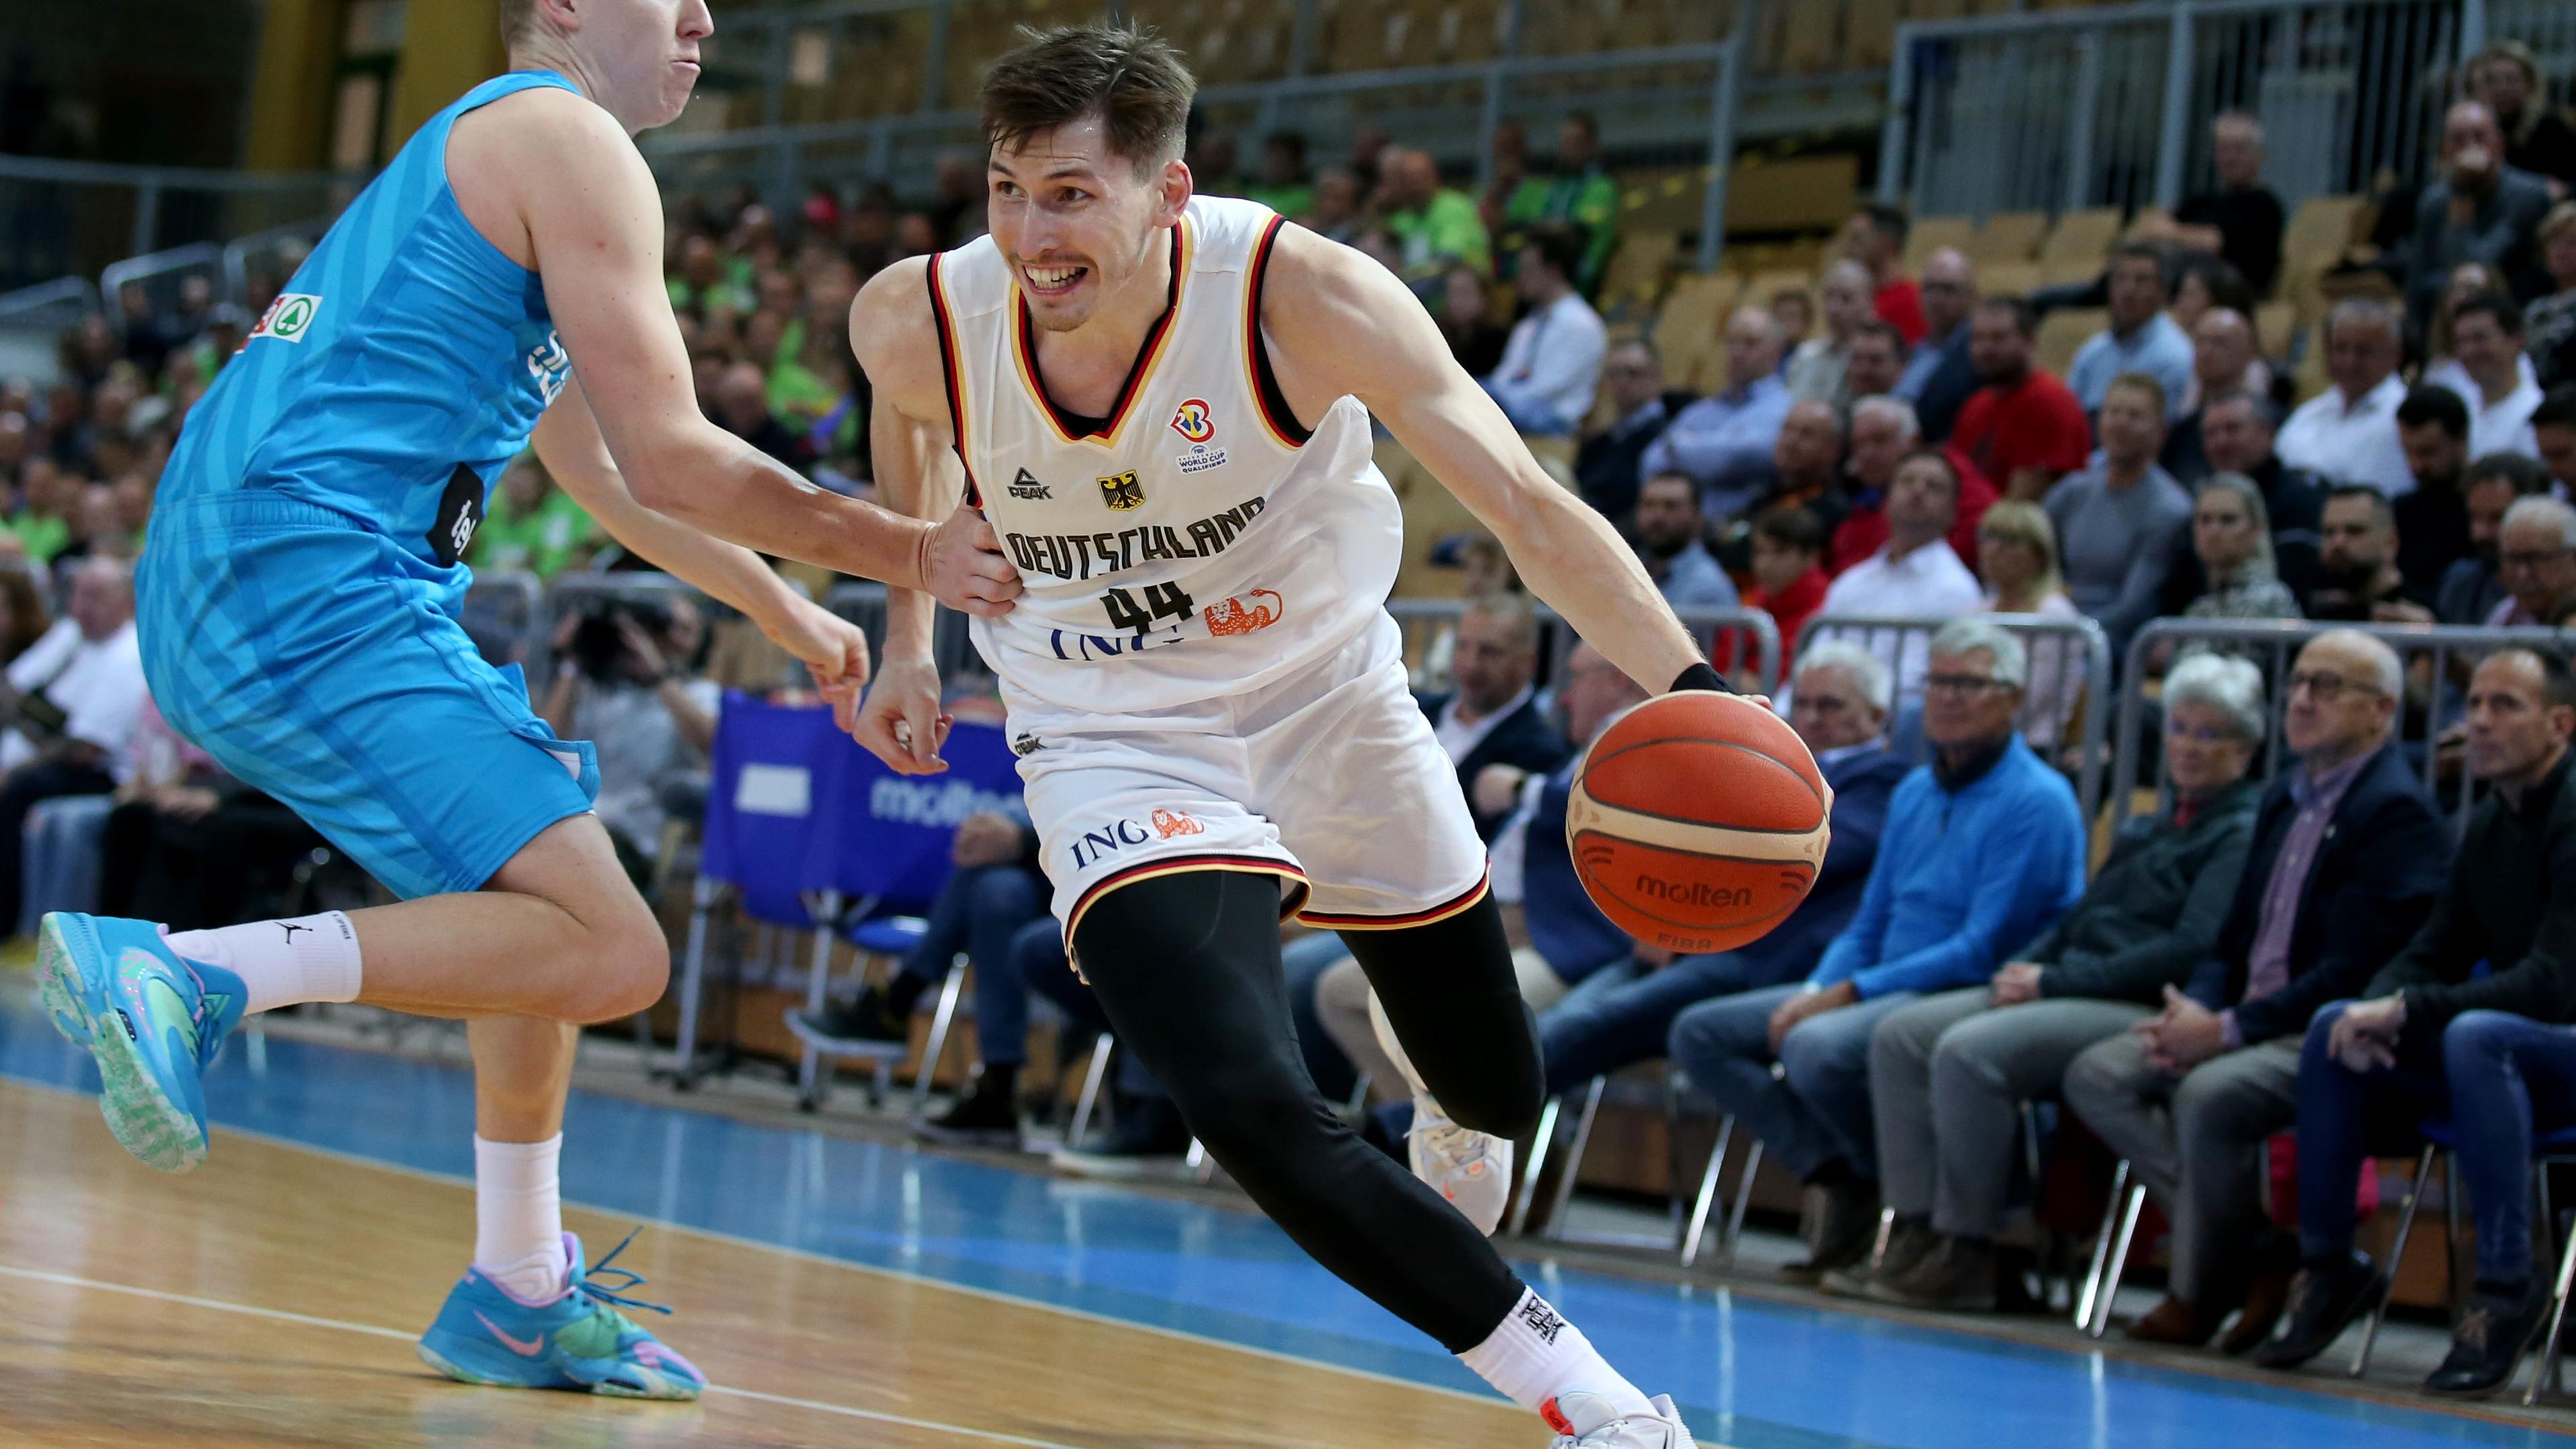 Slowenien, Koper: Basketball: WM-Qualifikation, Slowenien - Deutschland: David Krämer aus Deutschland (r) zieht gegen Miha Lapornik aus Slowenien zum Korb.